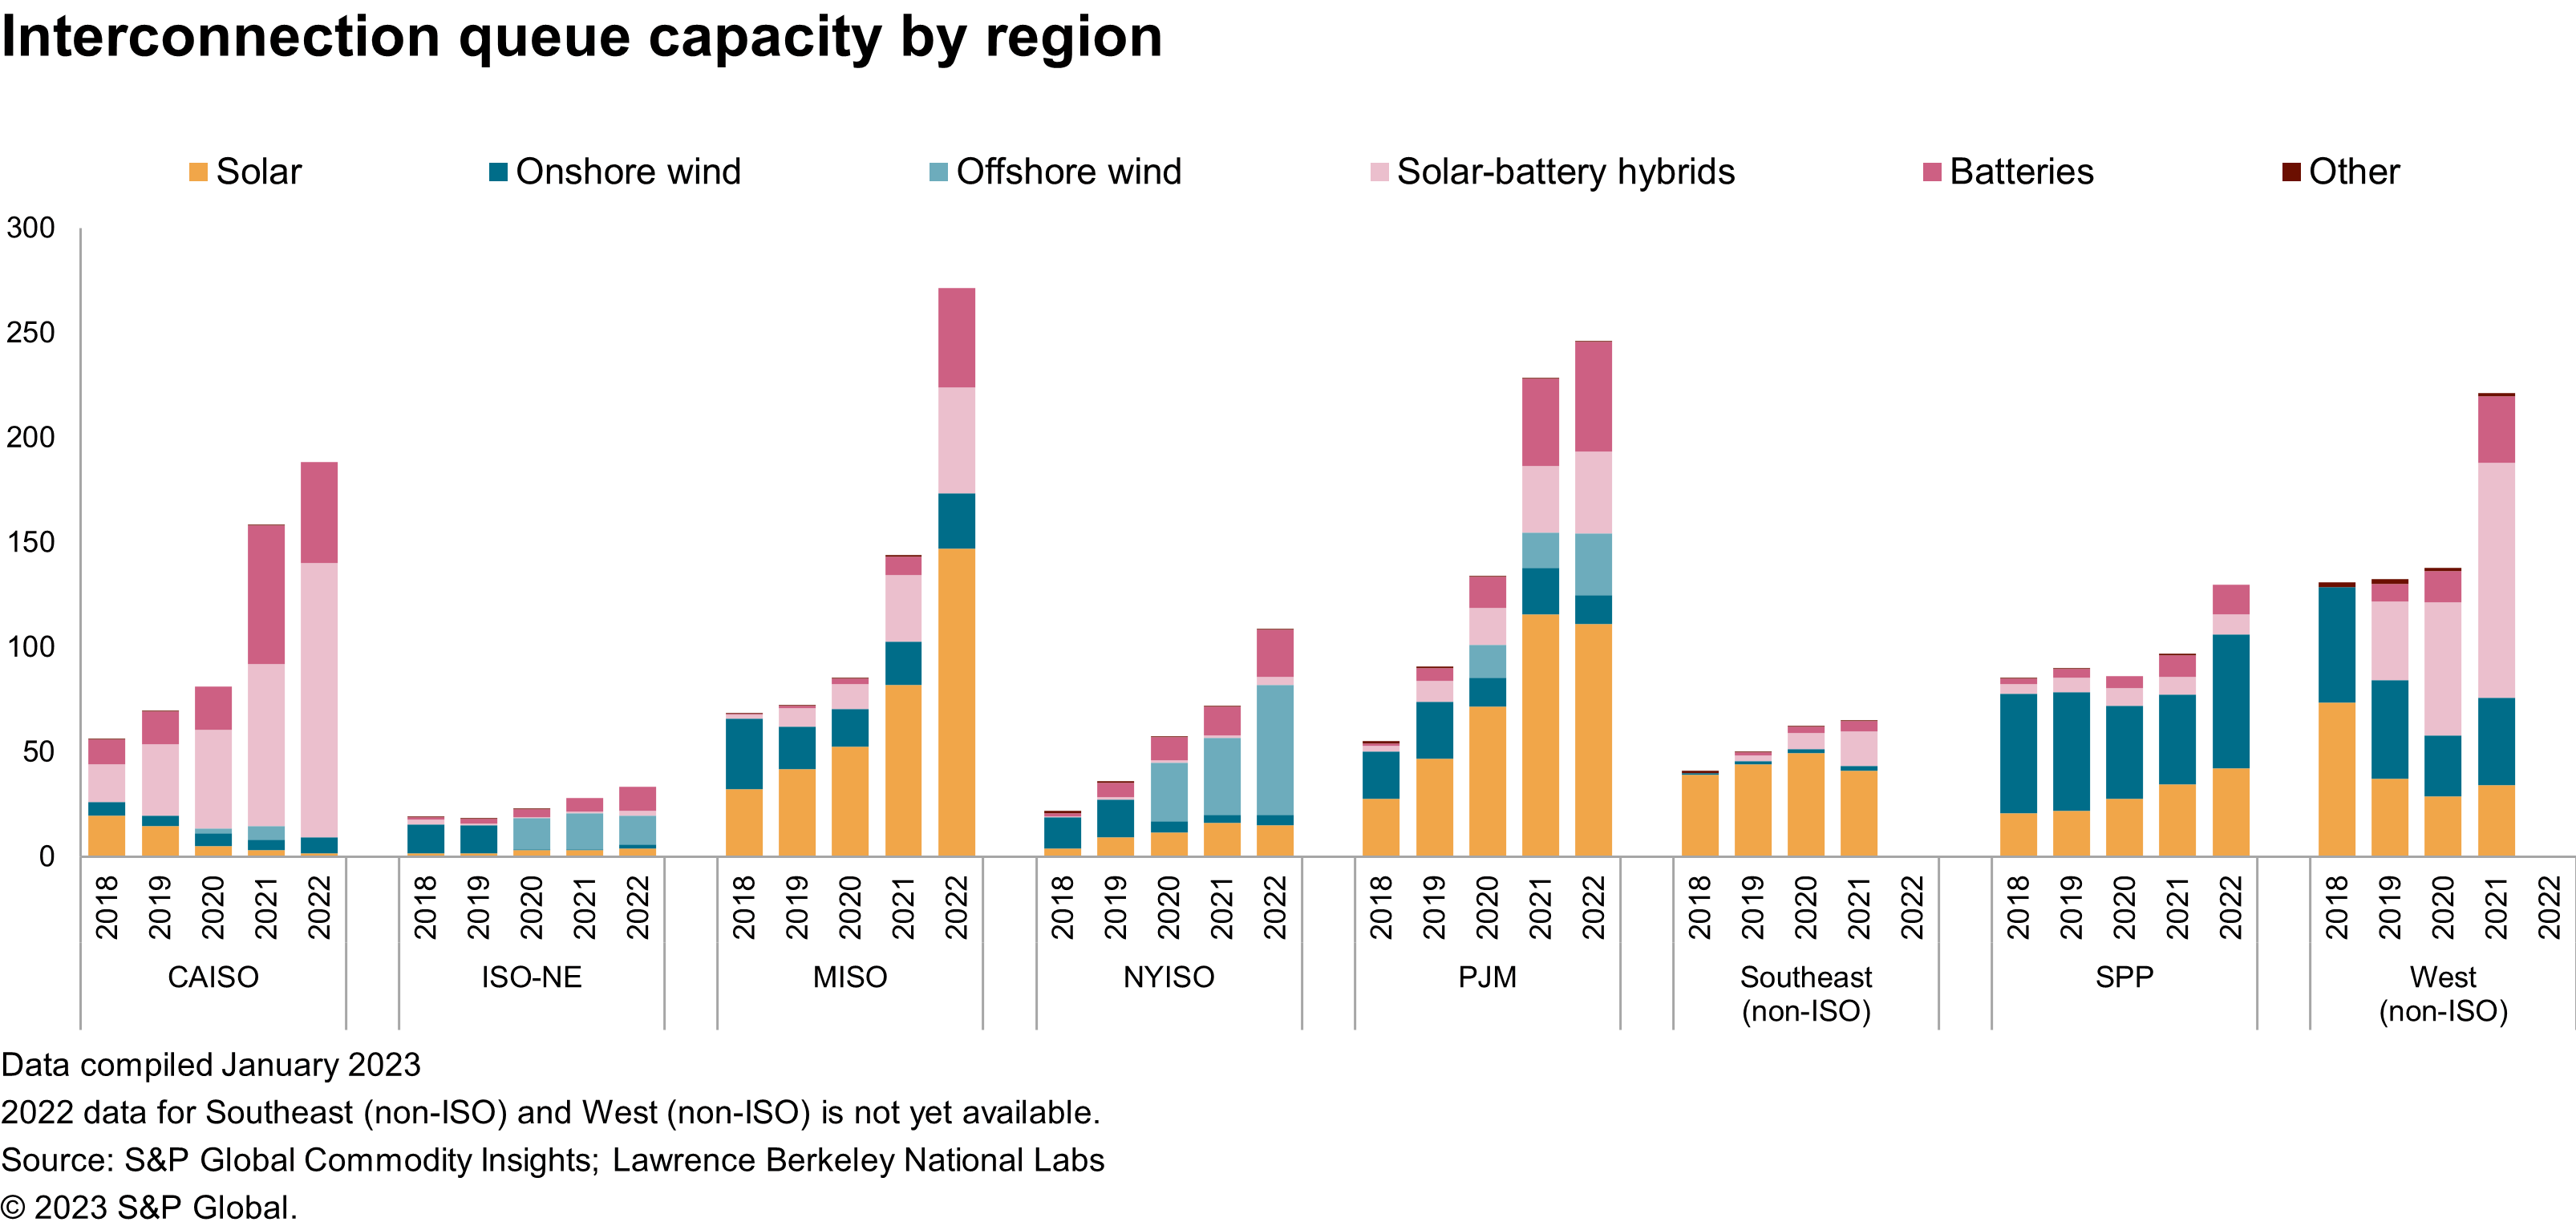 Interconnection queue capacity by region (GW)